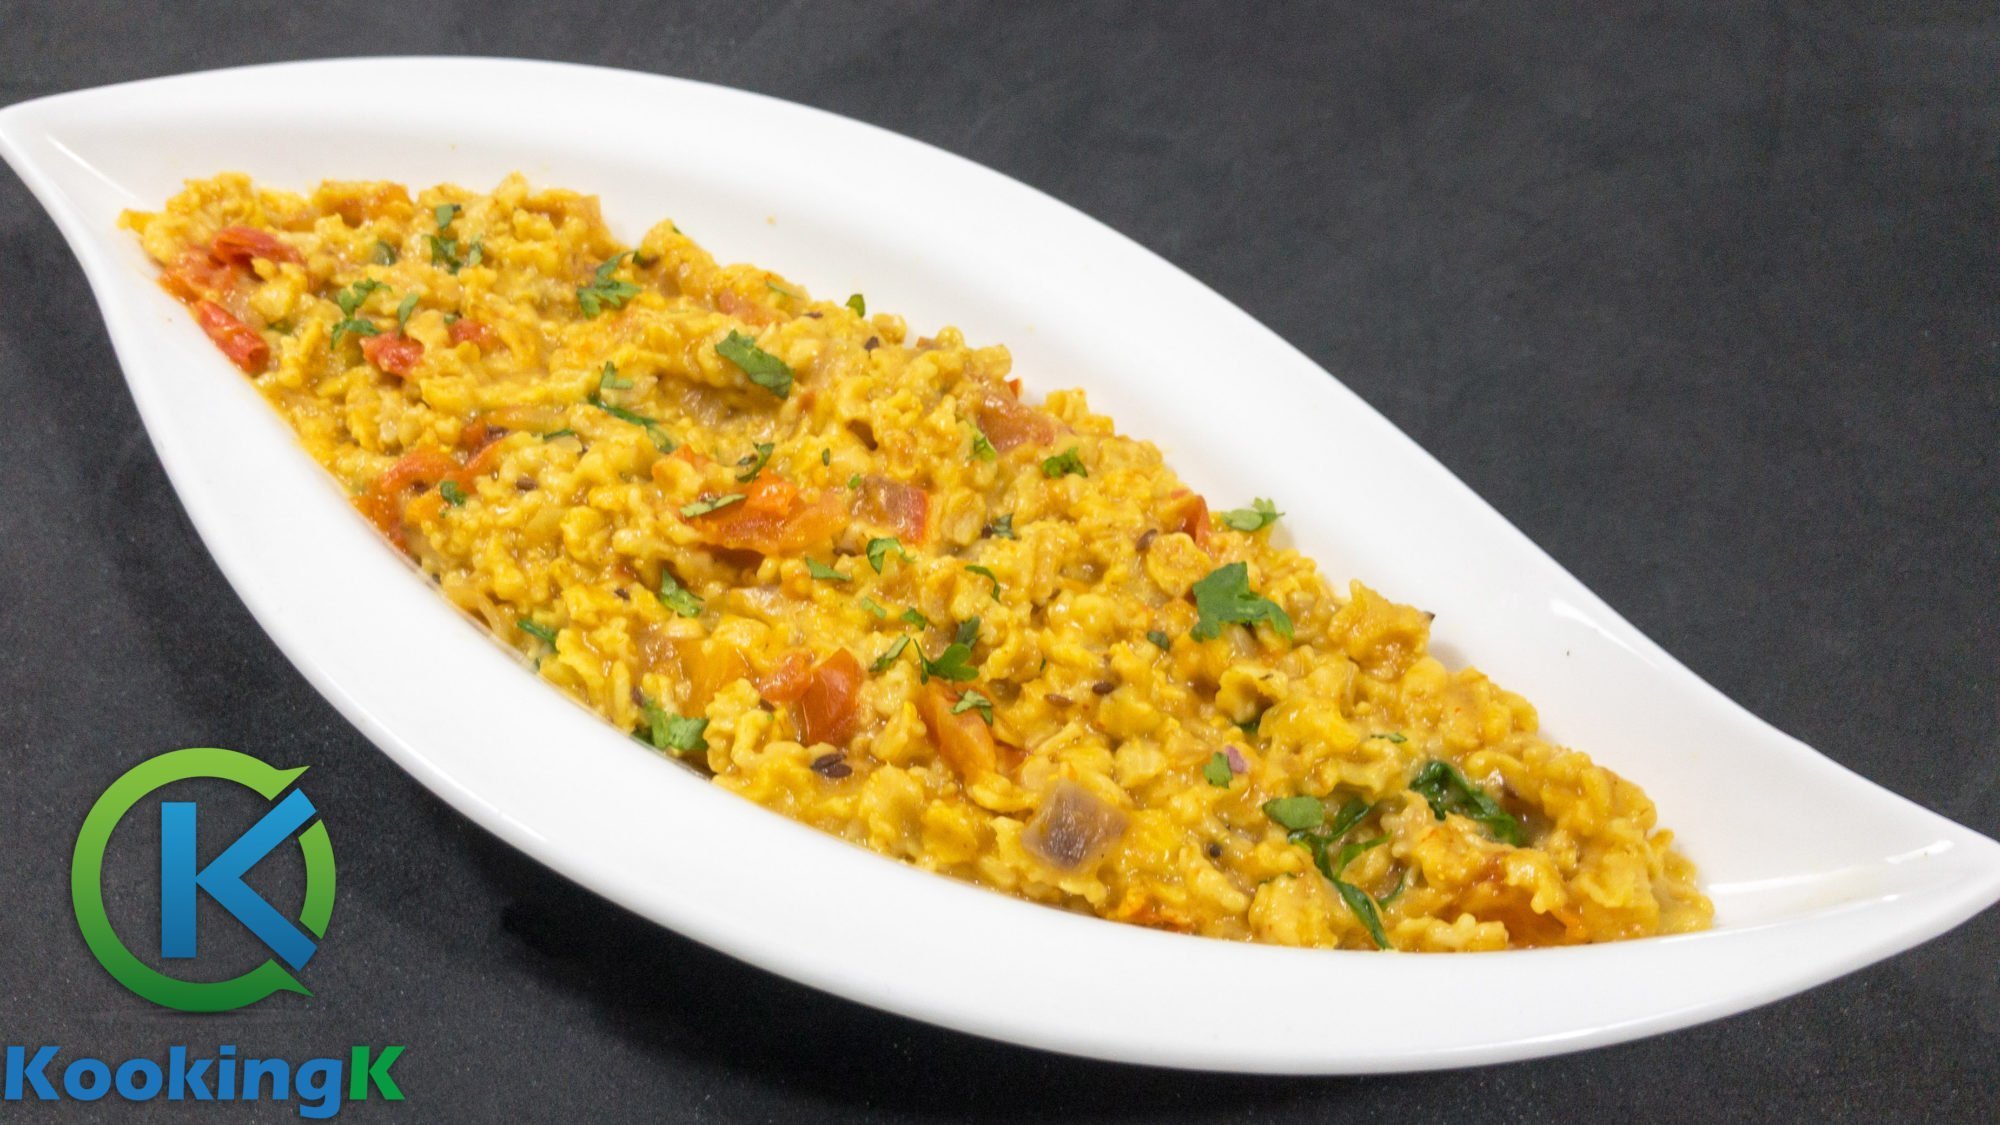 Delicious Masala Oats Recipe - Healthy Breakfast Recipe by KooKingK